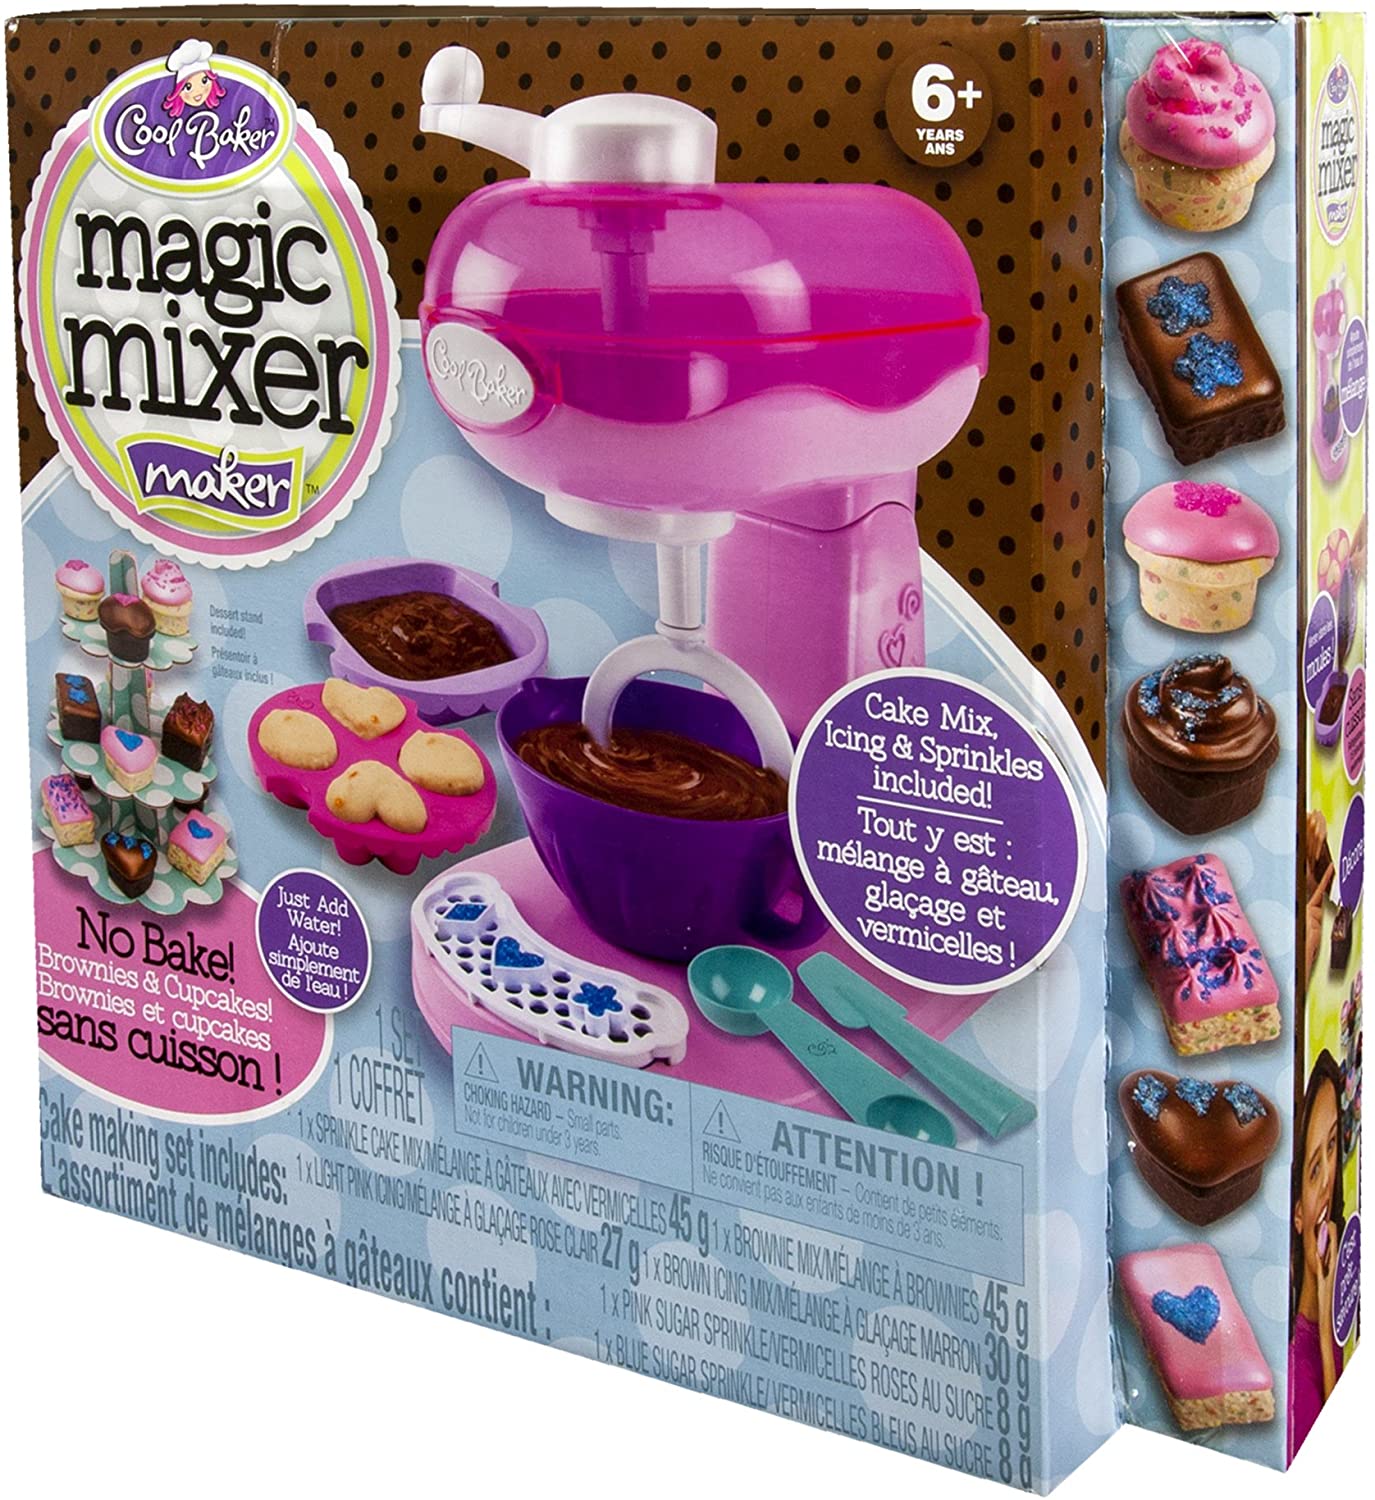 Cool Baker Magic Mixer Maker - Pink – STL PRO, Inc.